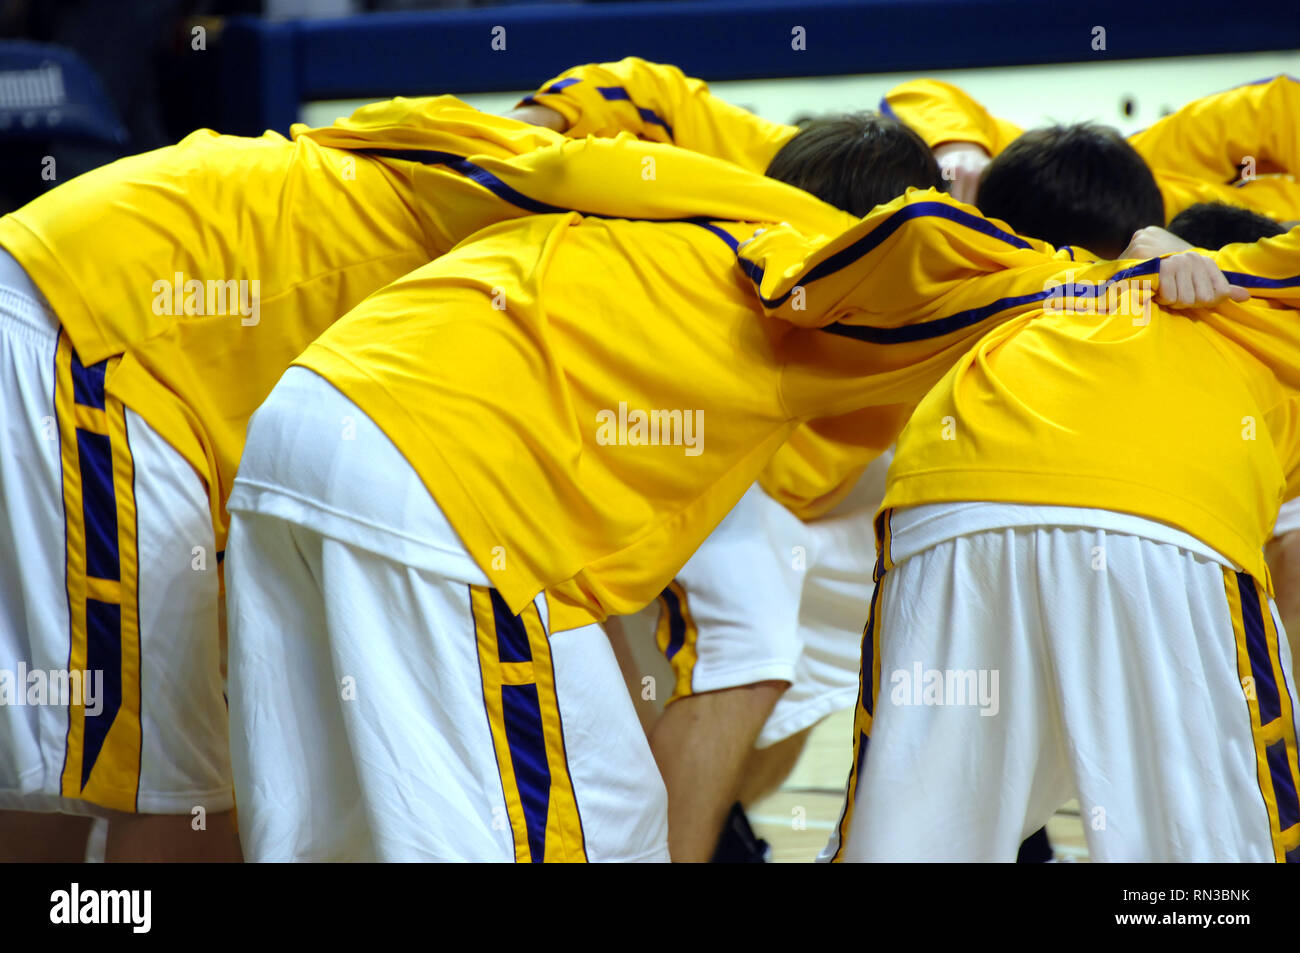 High School Varsity Basketball team Unordnungen zusammen vor dem Spiel starten. Uniformen sind Gelb, Violett und Weiß. Stockfoto